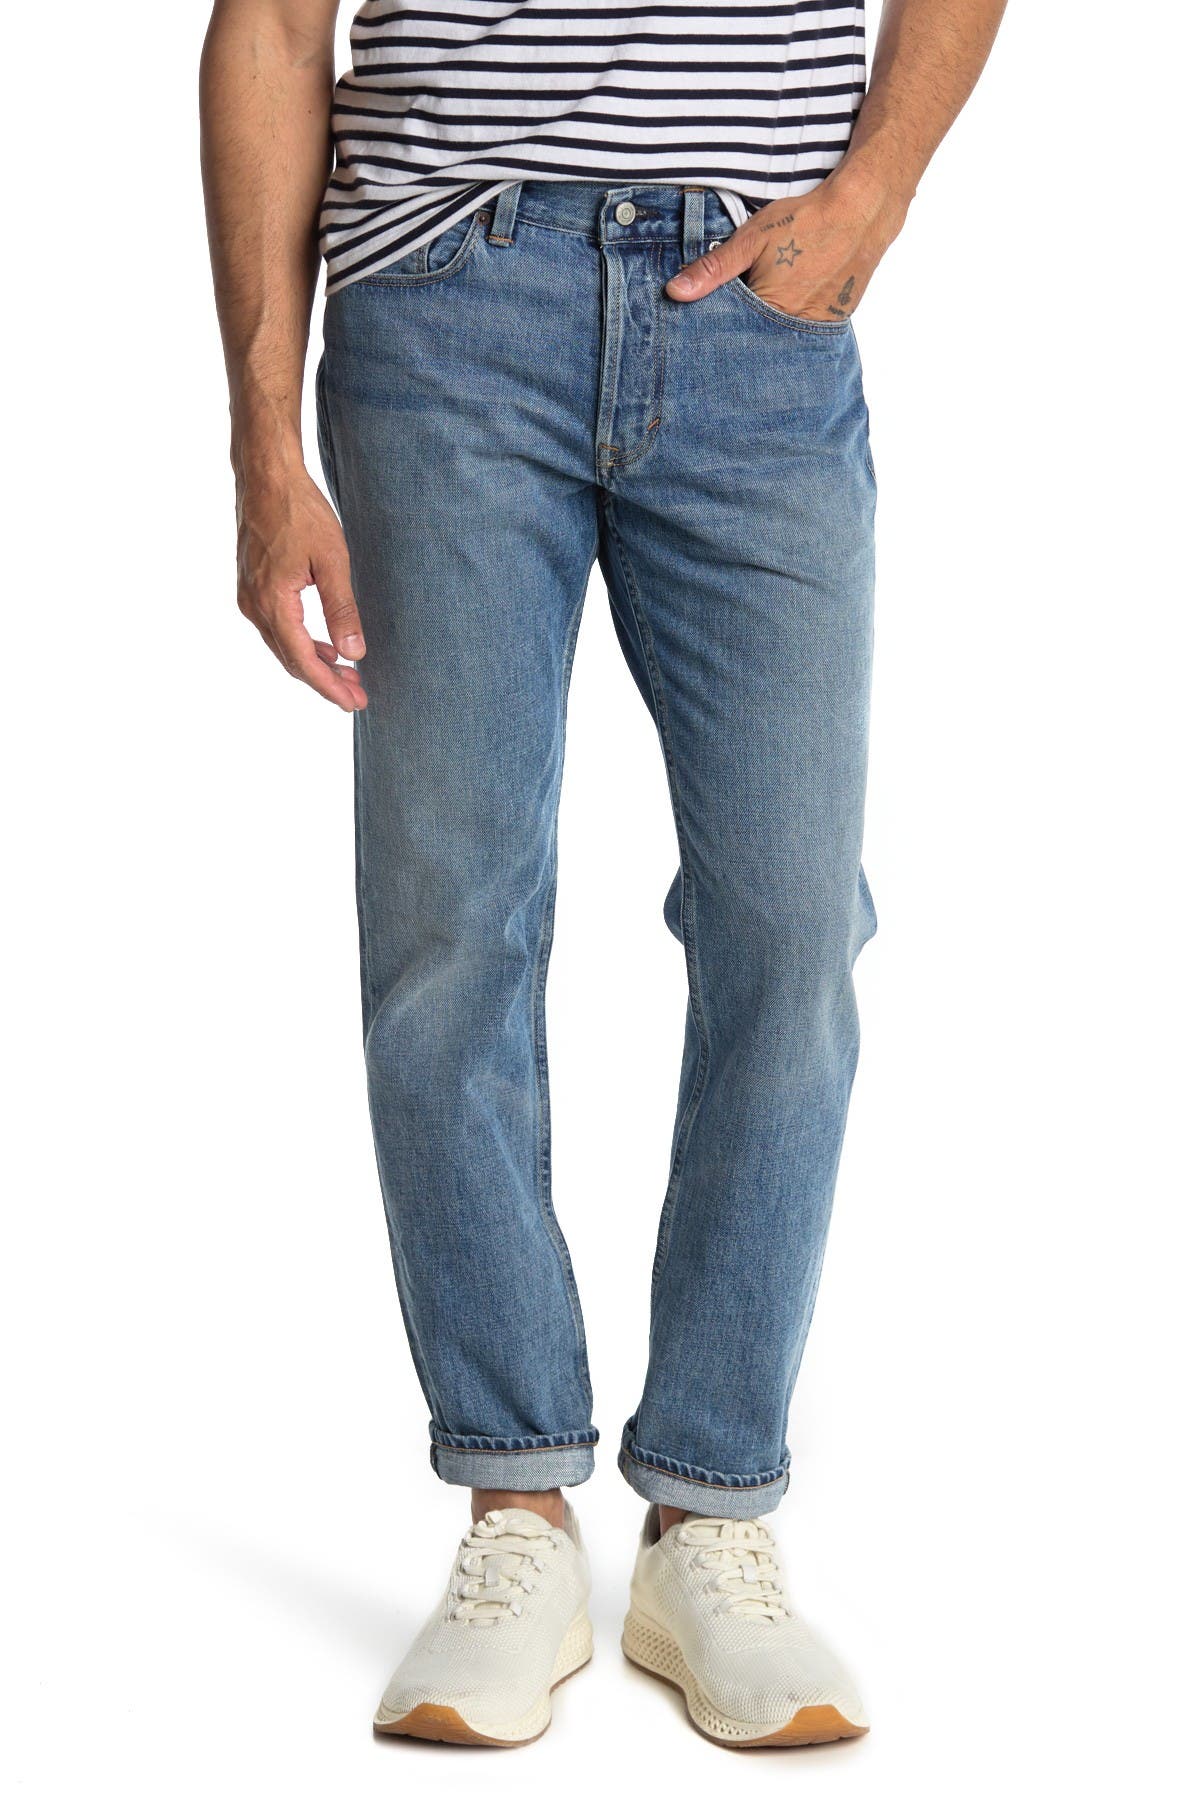 Alex Mill Straight Leg Denim Jeans In Open Blue30